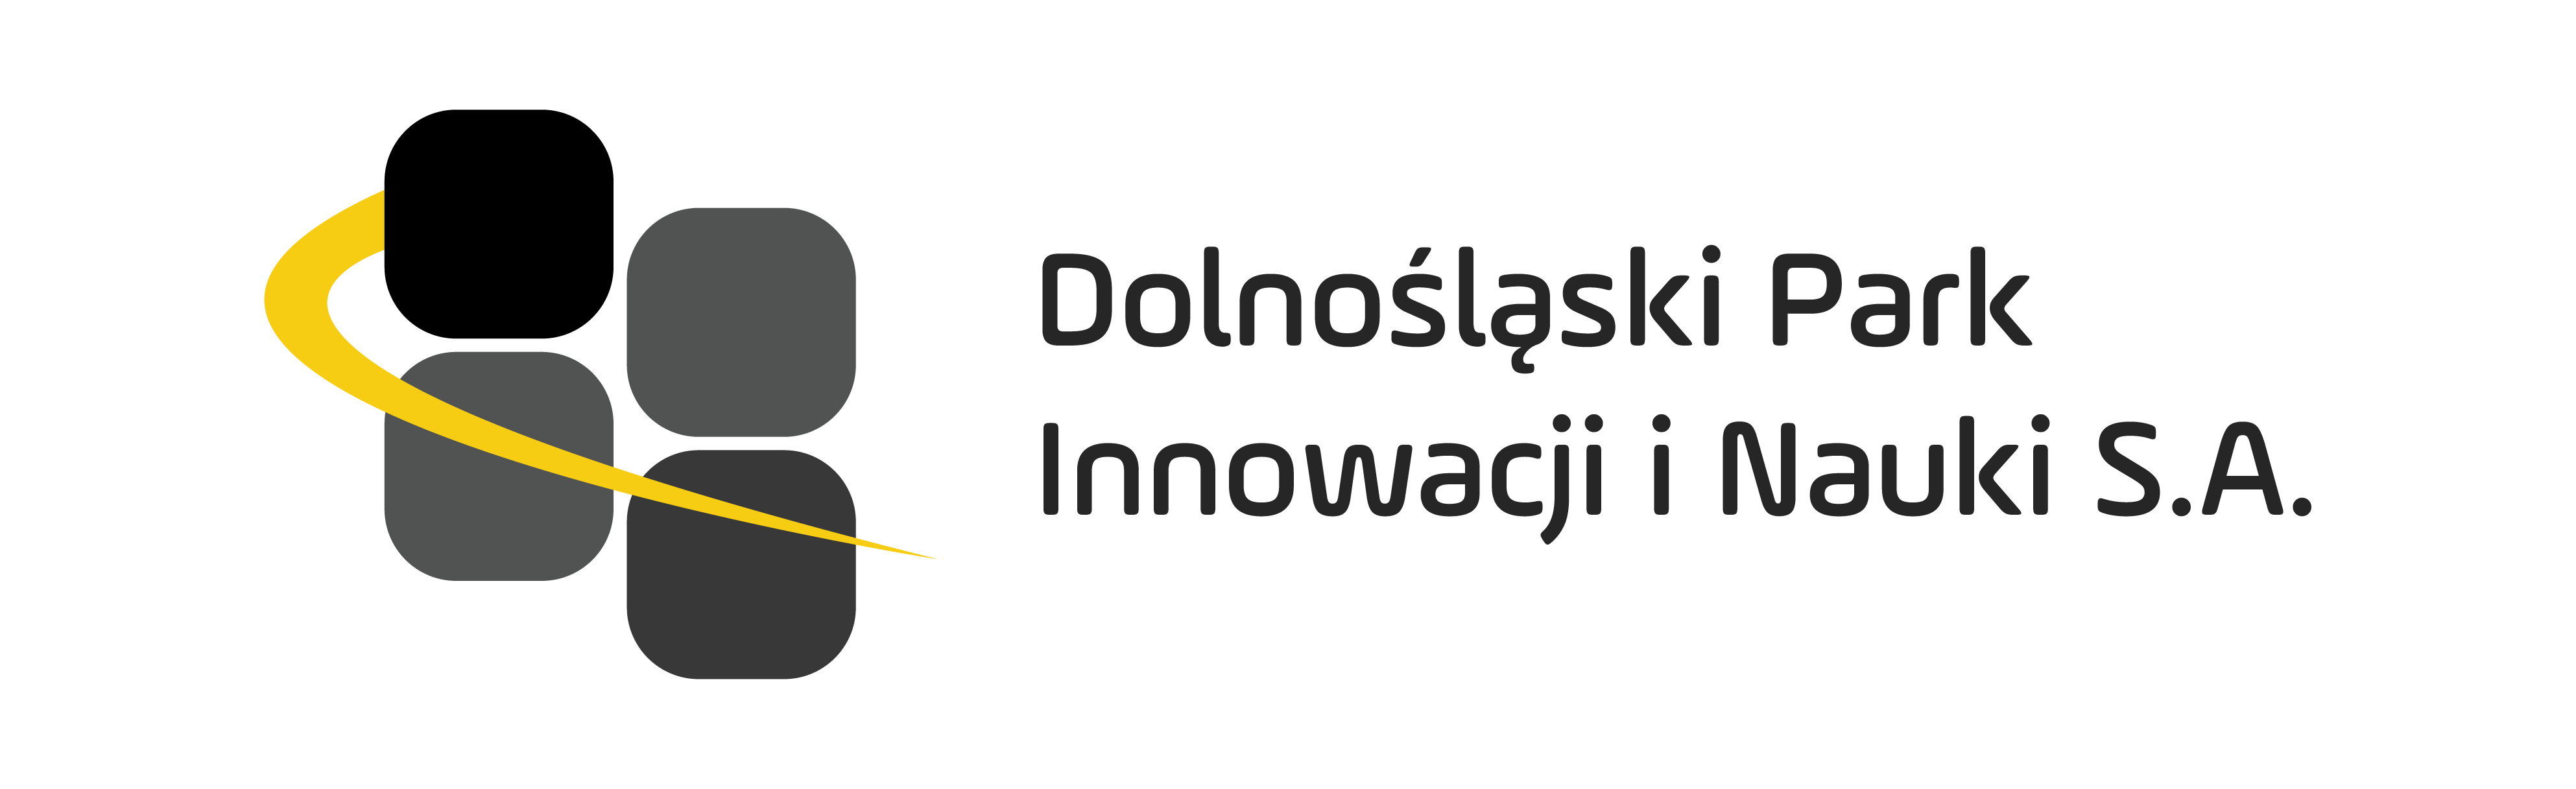 Grafika przedstawia logotyp. Znajduje się na niej napis "Dolnośląski Park Innowacji i Nauki S.A." oraz po lewej stronie znajdują się cztery kwadraty w kolorze czarnym oraz szarym.